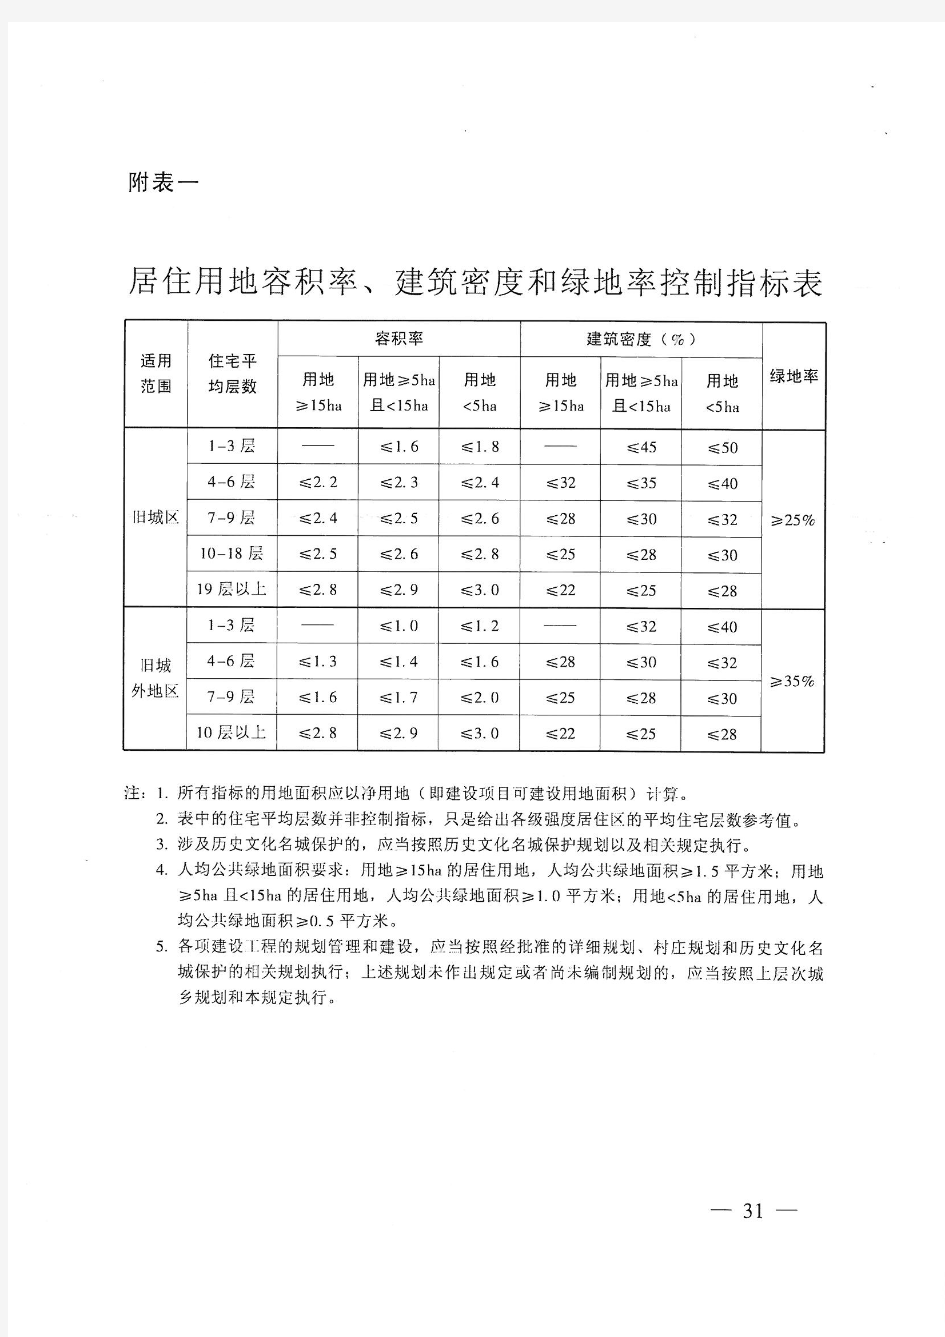 广州市城乡规划技术规定2016附表